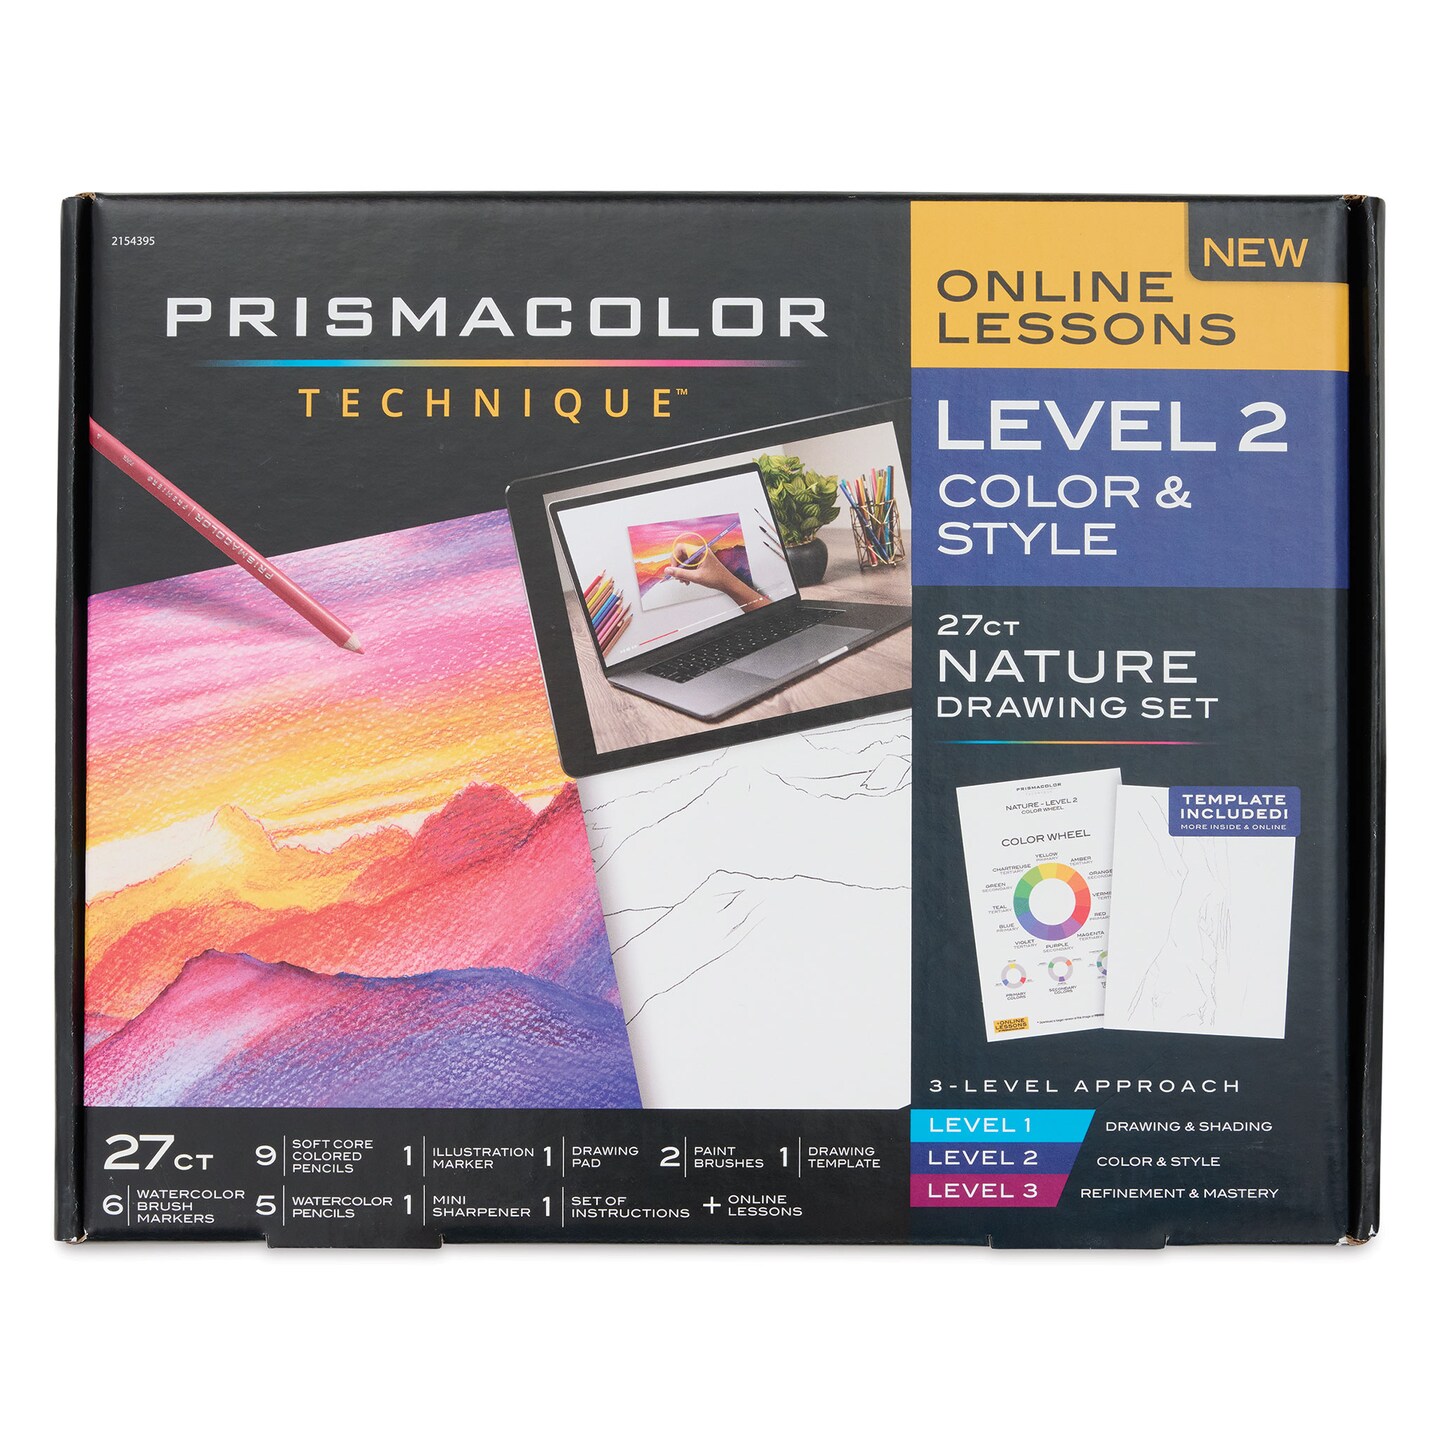 Prismacolor Technique Nature Drawing Set - Level 2, Color &#x26; Style